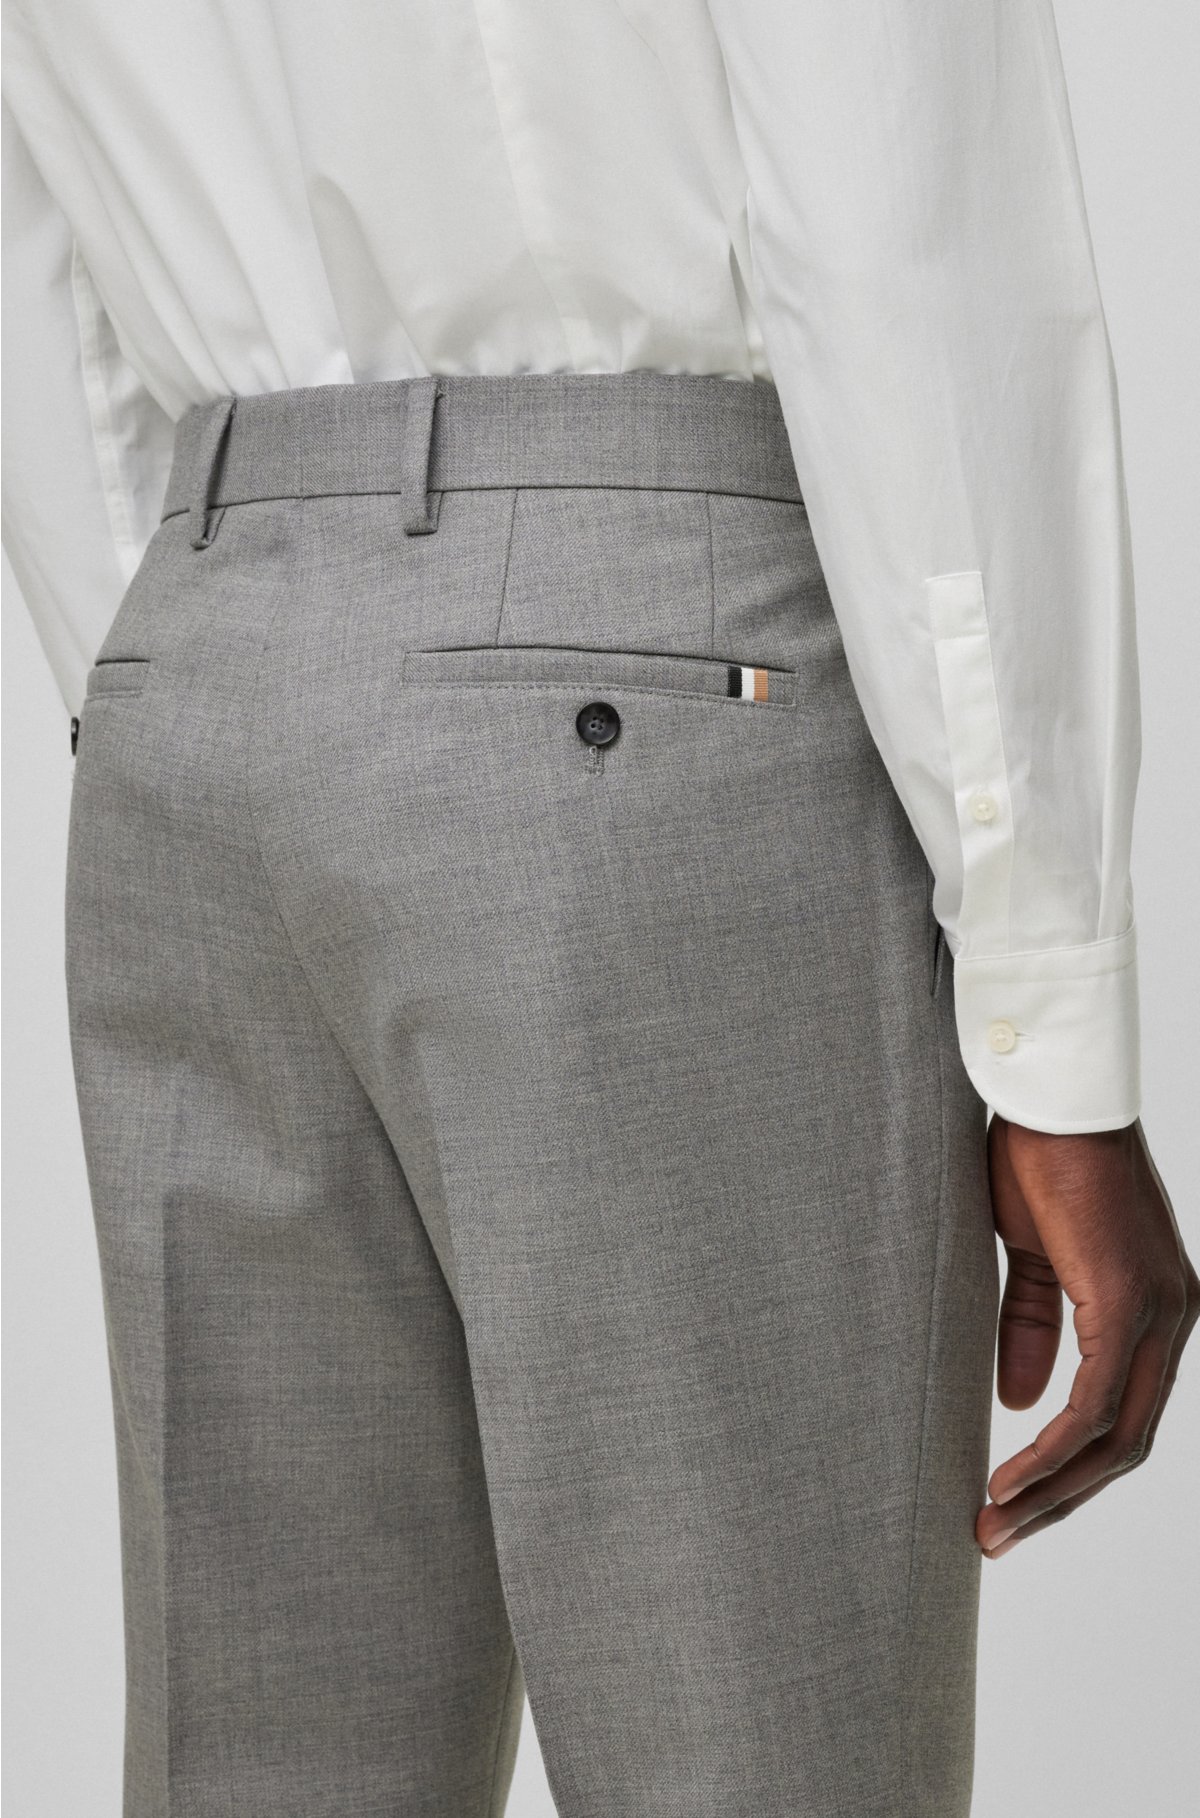 - virgin pants Slim-fit in BOSS micro-patterned wool